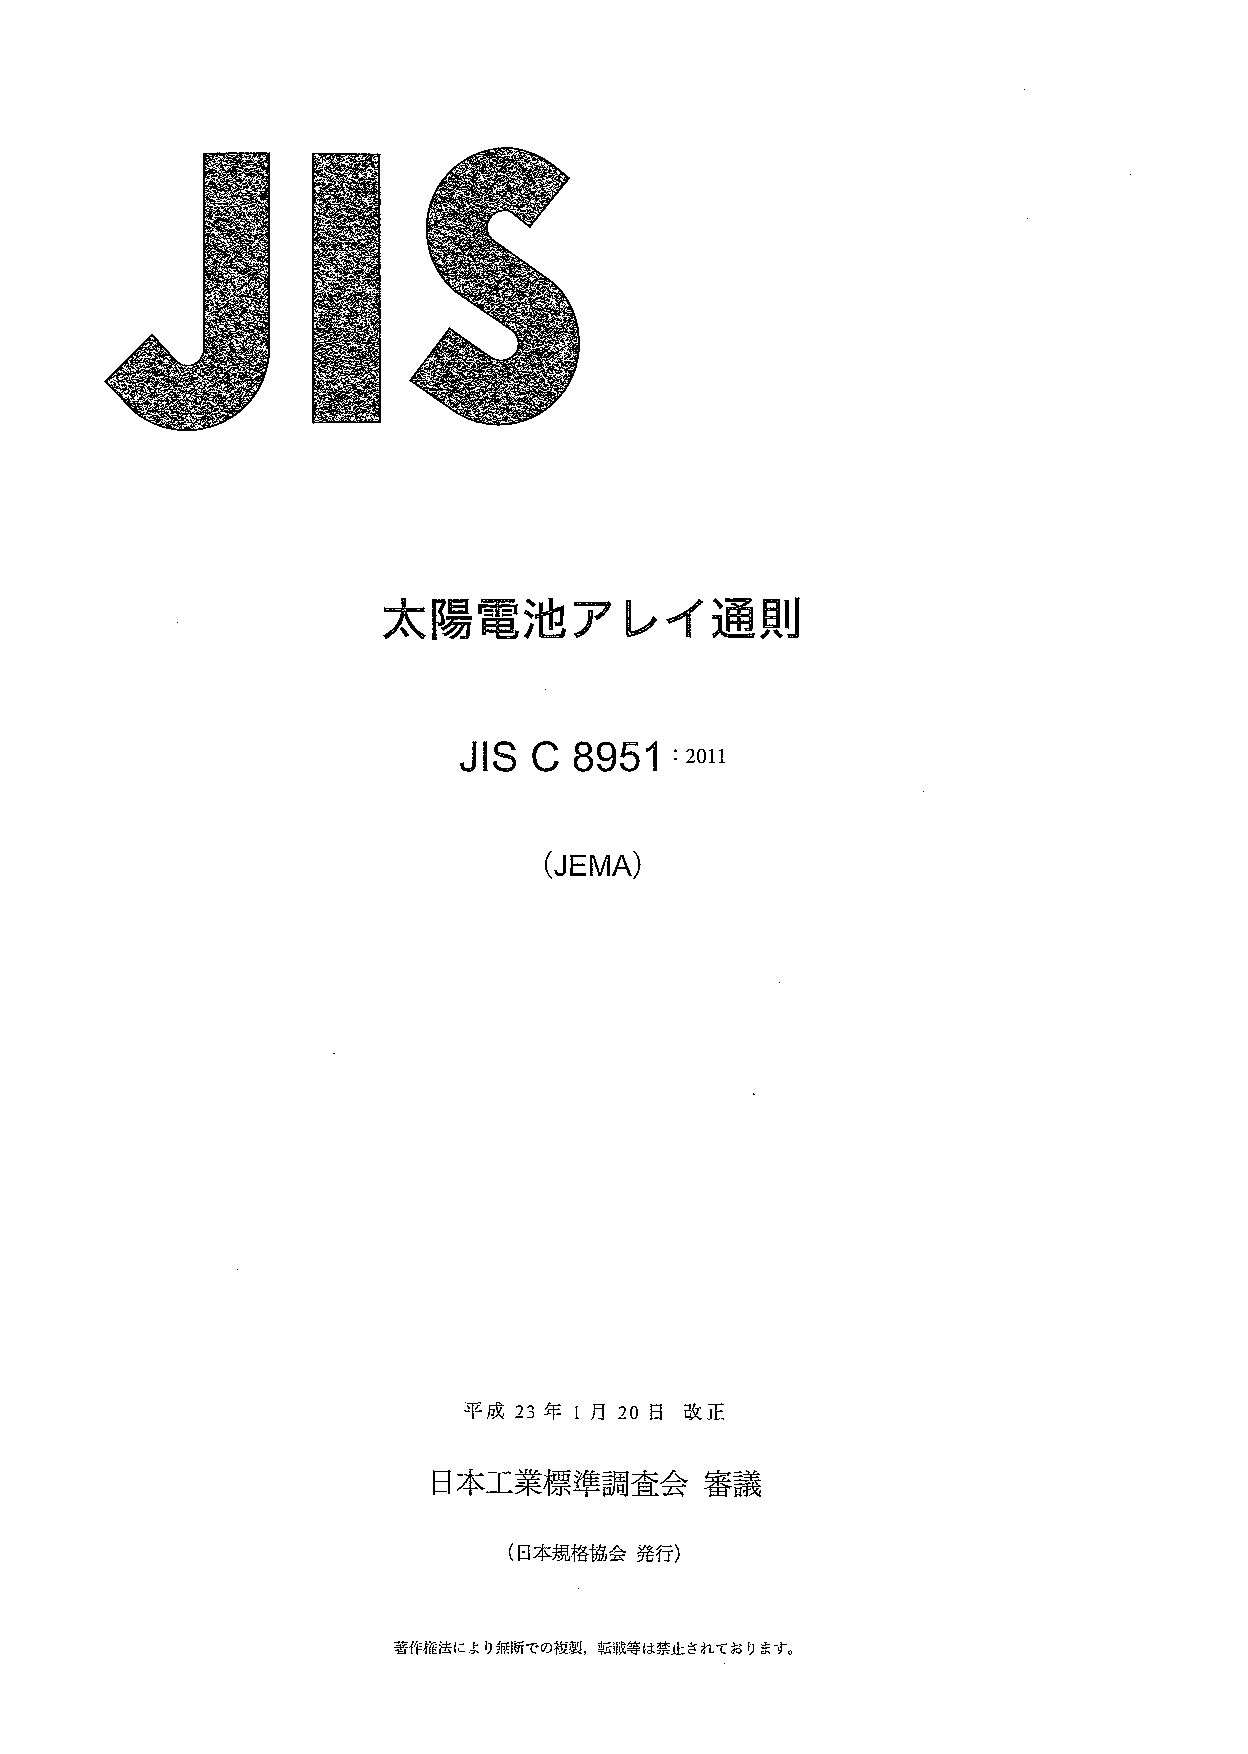 JIS C 8951:2011封面图